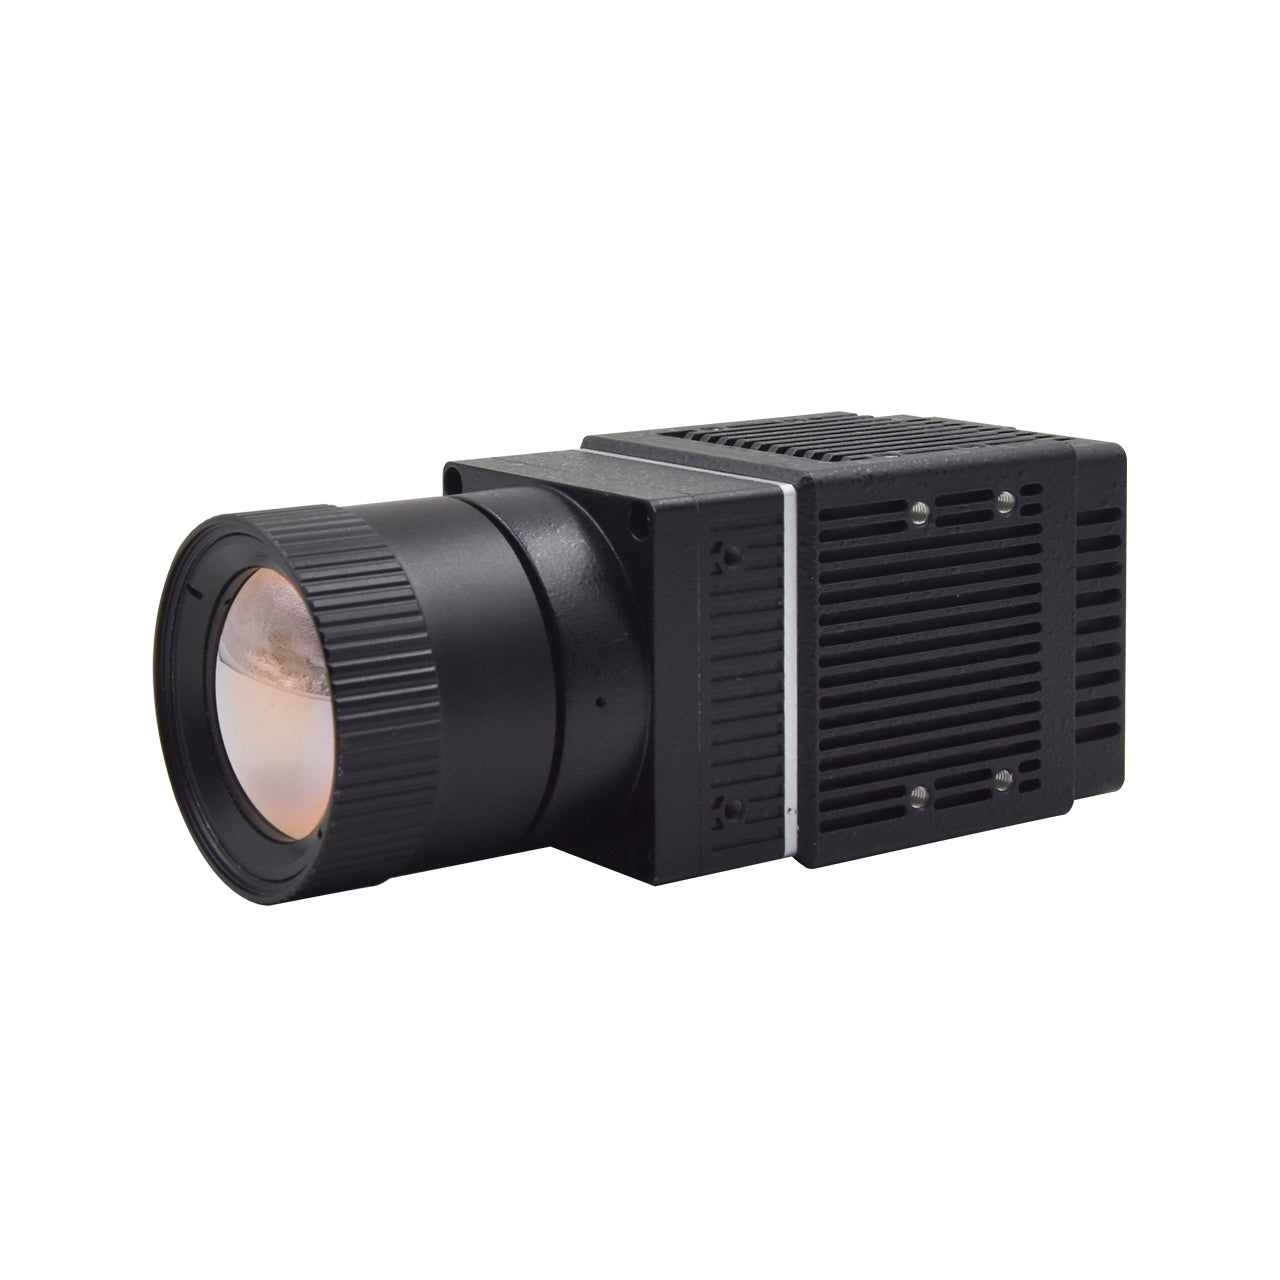 Ungekühlte LWIR-Wärmebildkamera zur Sicherheitsüberwachung, industrielle Temperaturmessung, optionales Objektiv